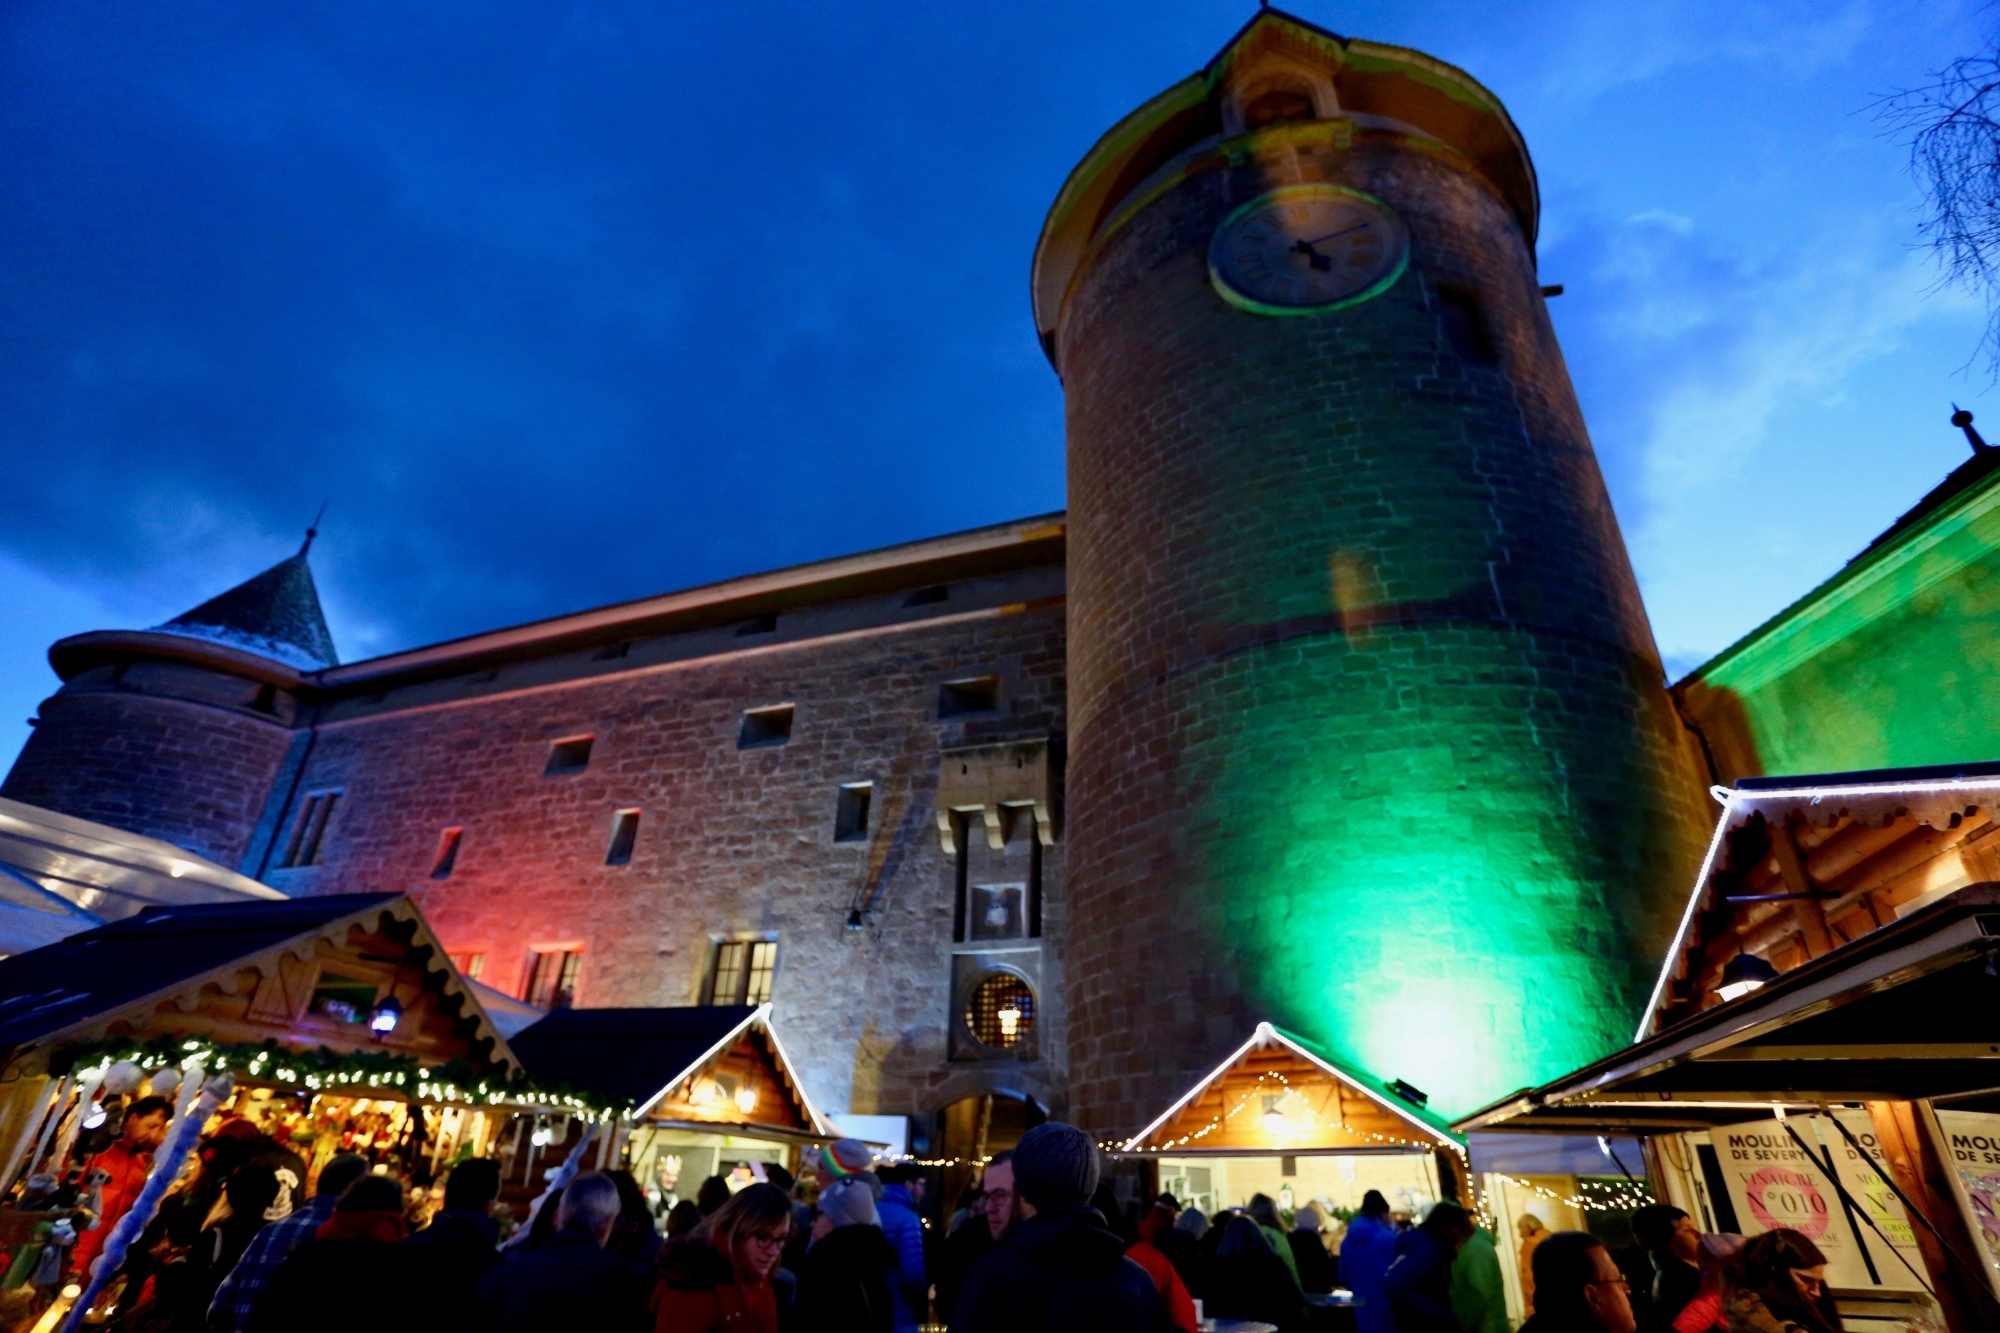 Le marché de Noël a vécu sa première édition au château, mis à disposition gratuitement par l’Etat de Vaud. 